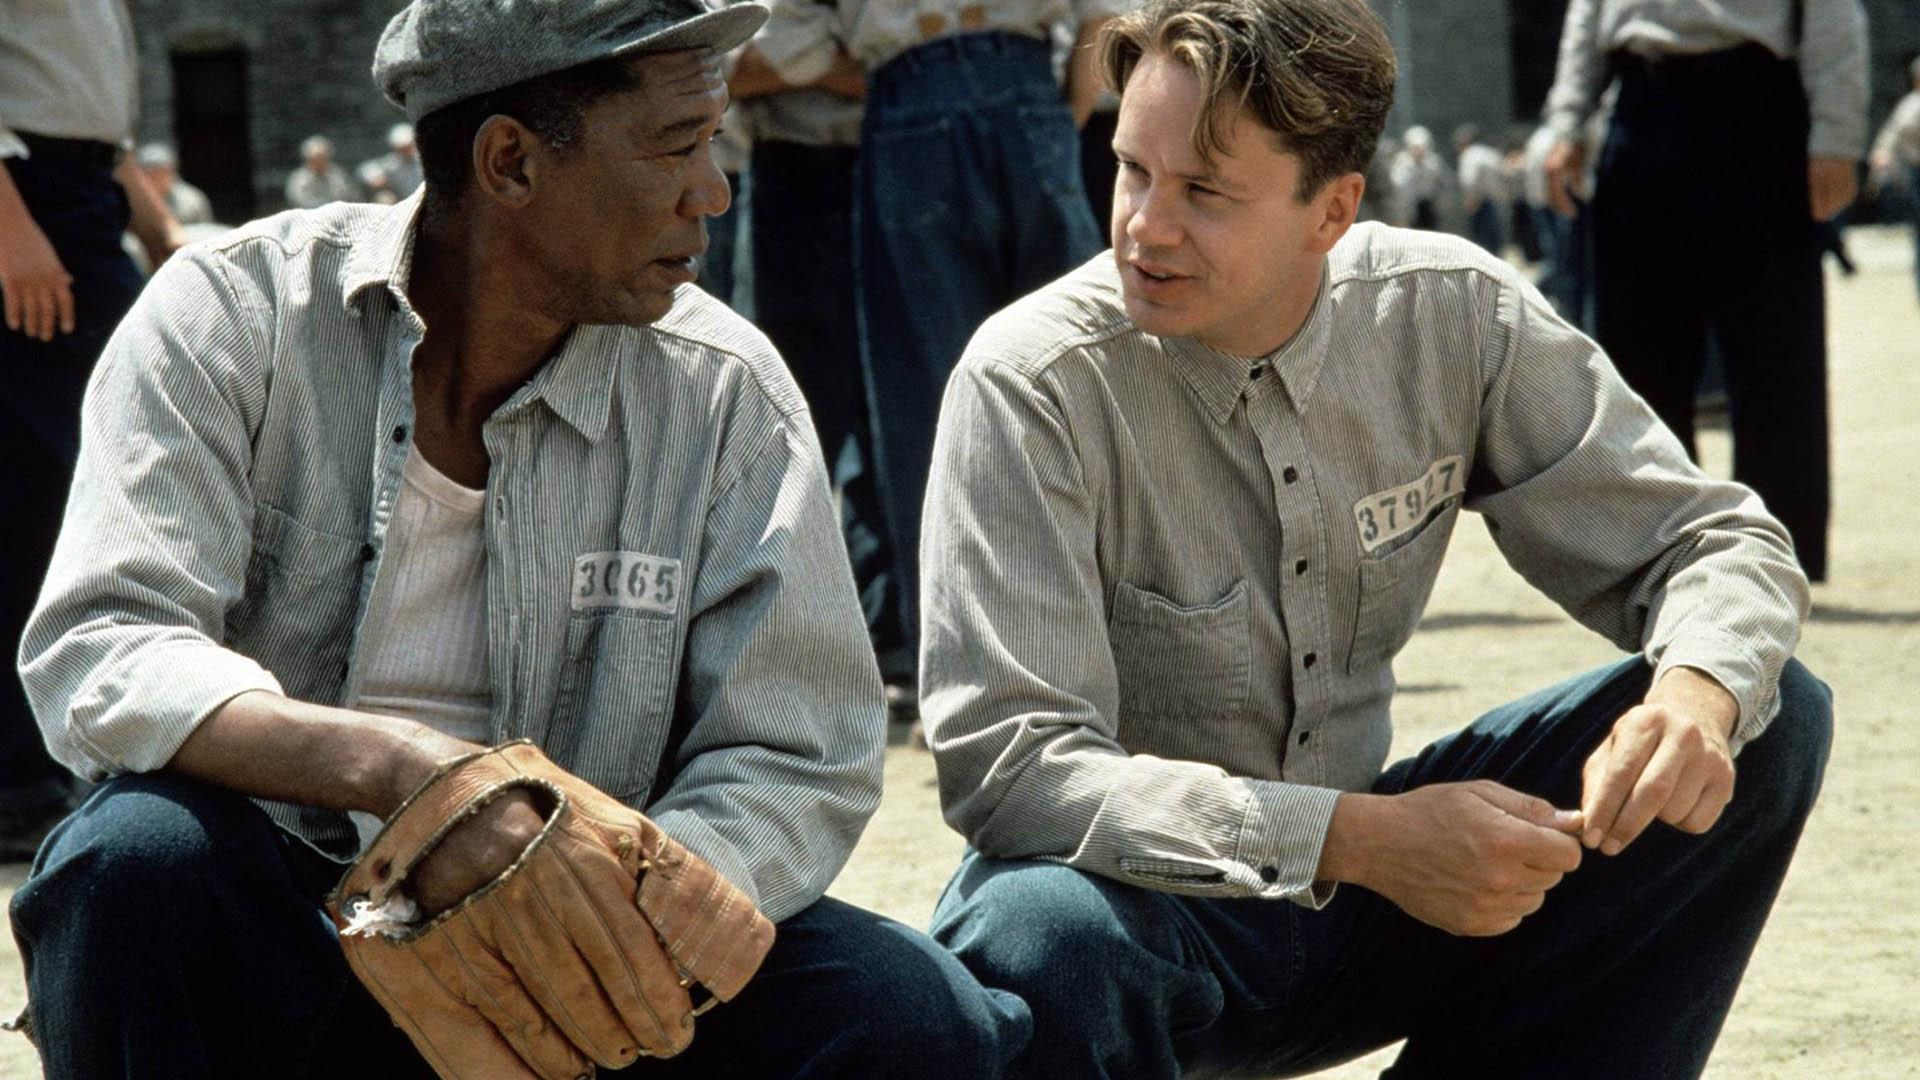 دستکش پاره بیسبال در دستان رد در فیلم The Shawshank Redemption